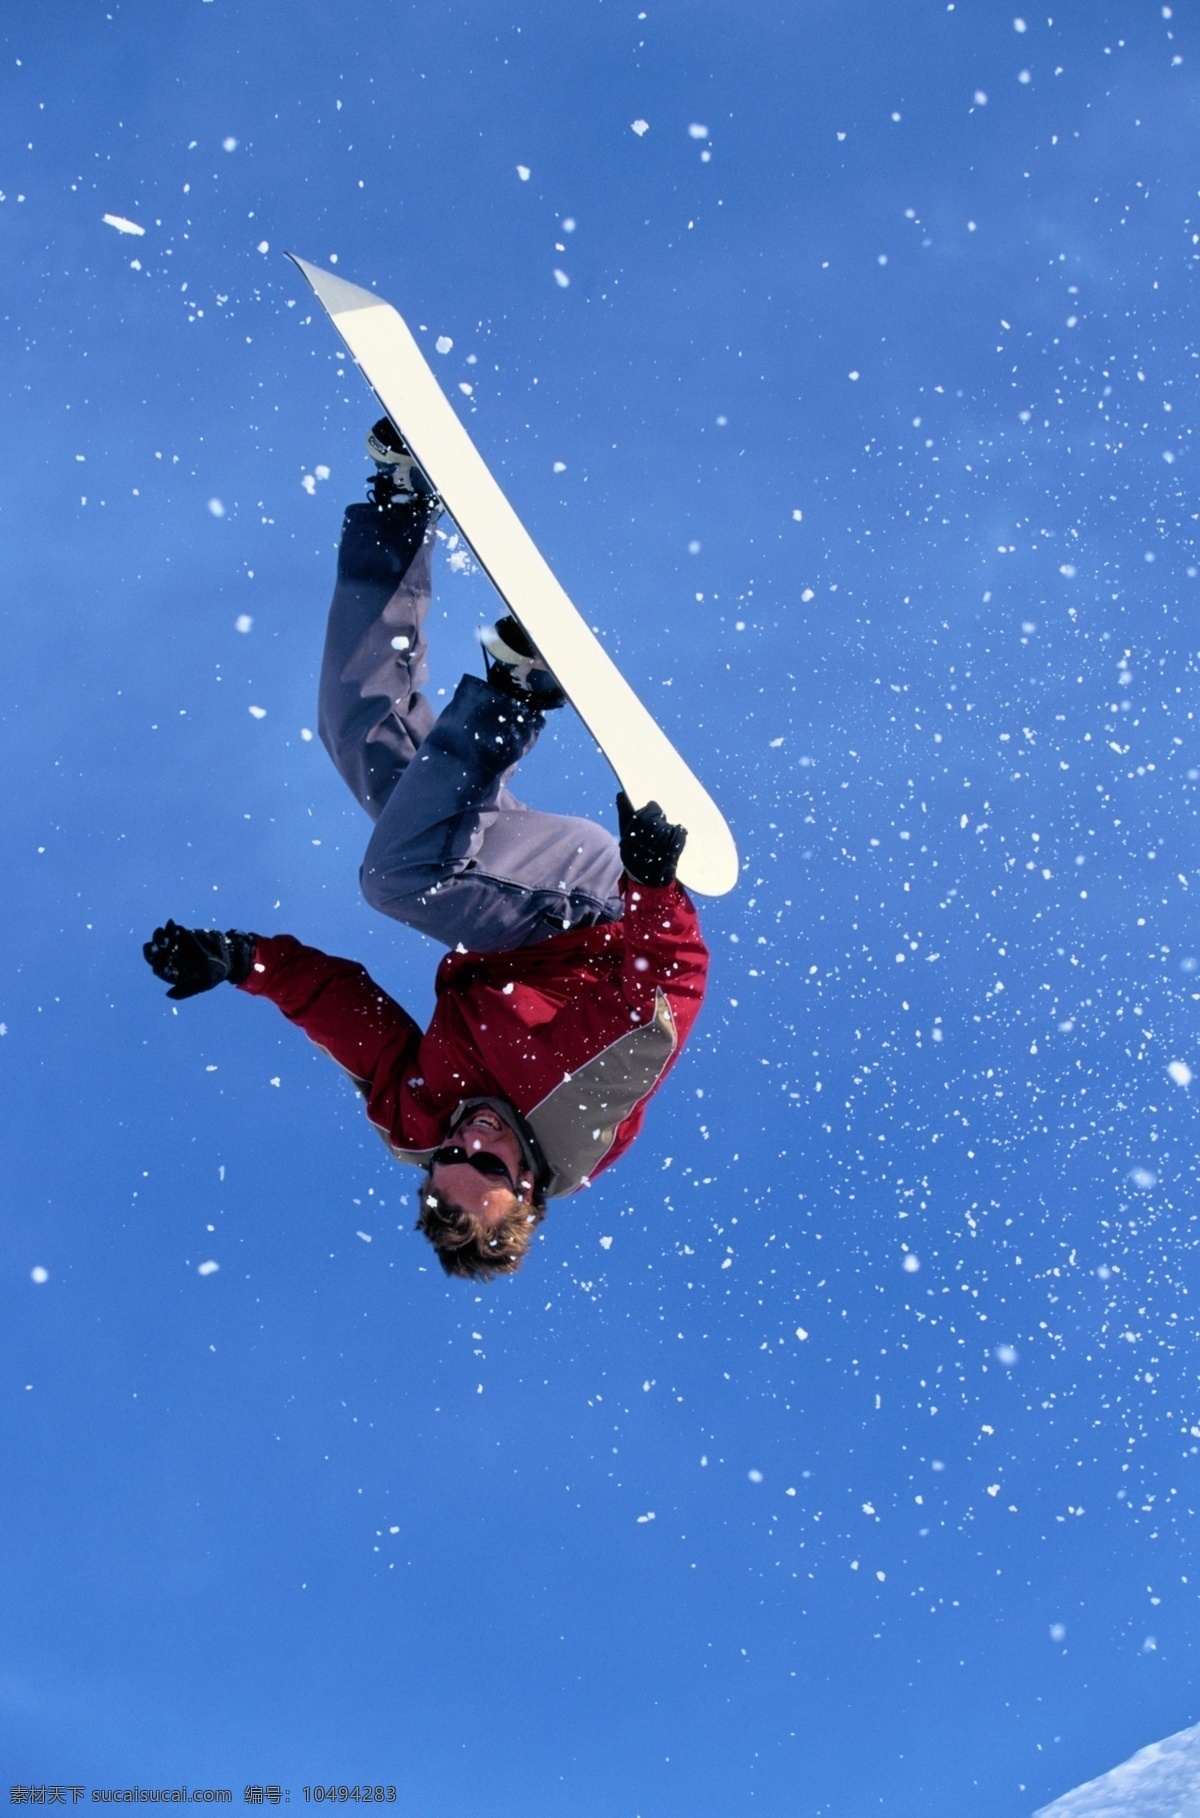 雪山免费下载 春夏秋冬 风景 寒冷 滑雪 极限运动 摄影图 雪峰 雪山 运动 运动员 自然景观 生活 旅游餐饮